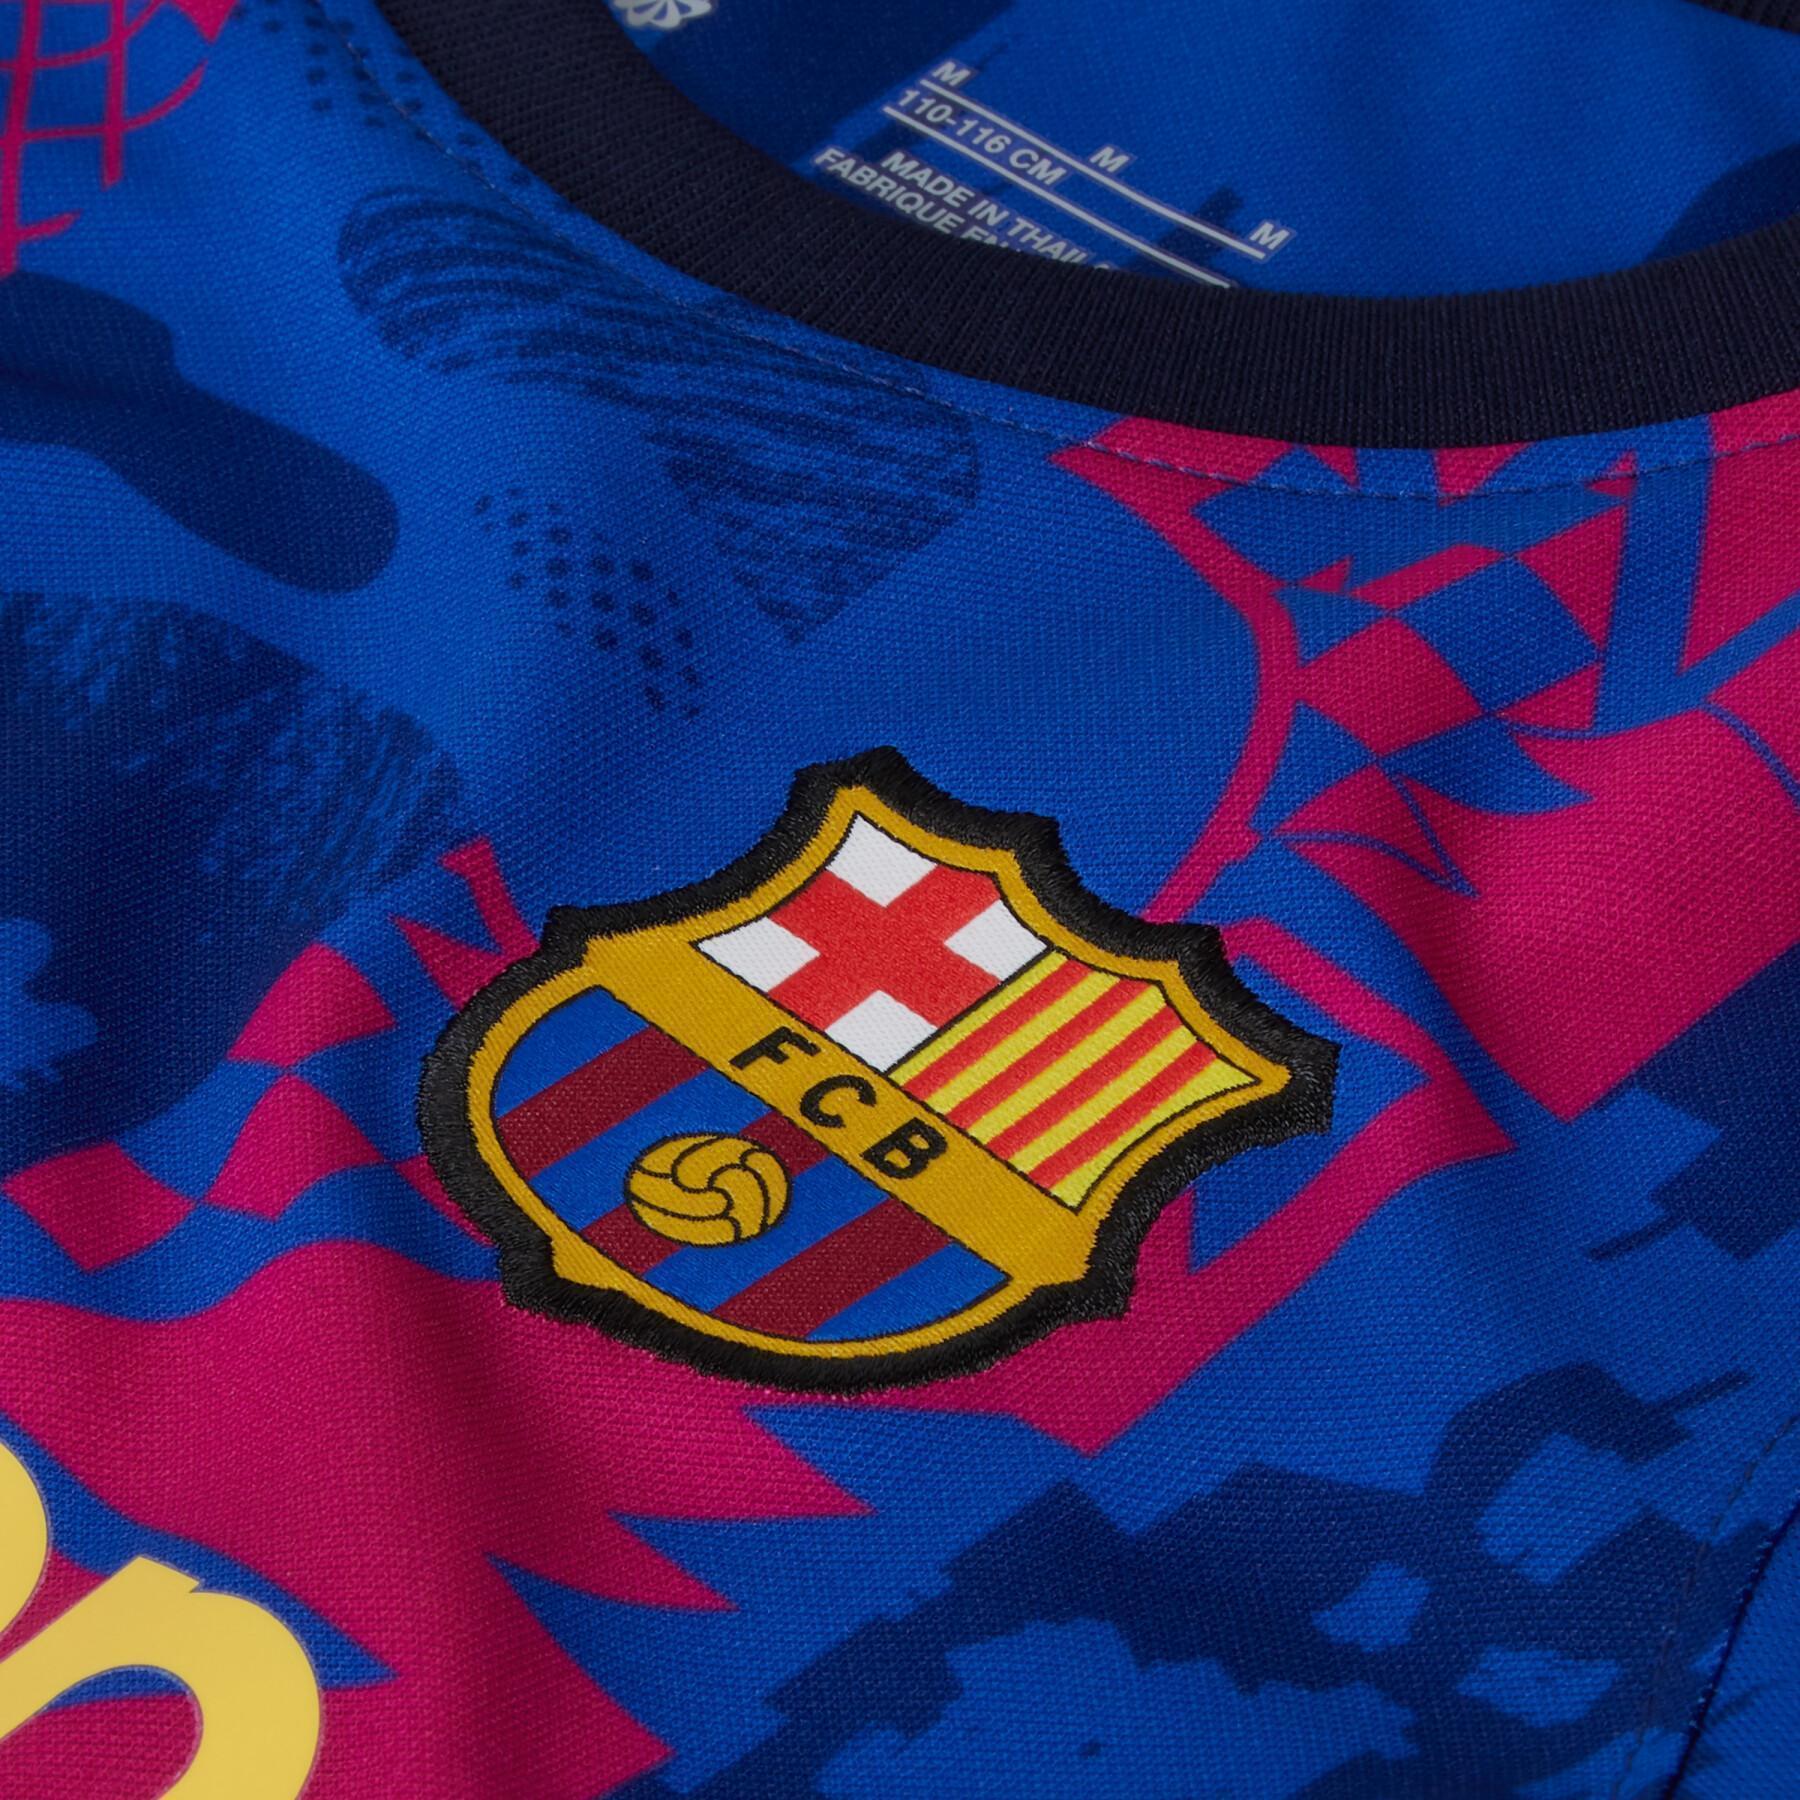 Mini-kit niño tercero FC Barcelone 2021/22